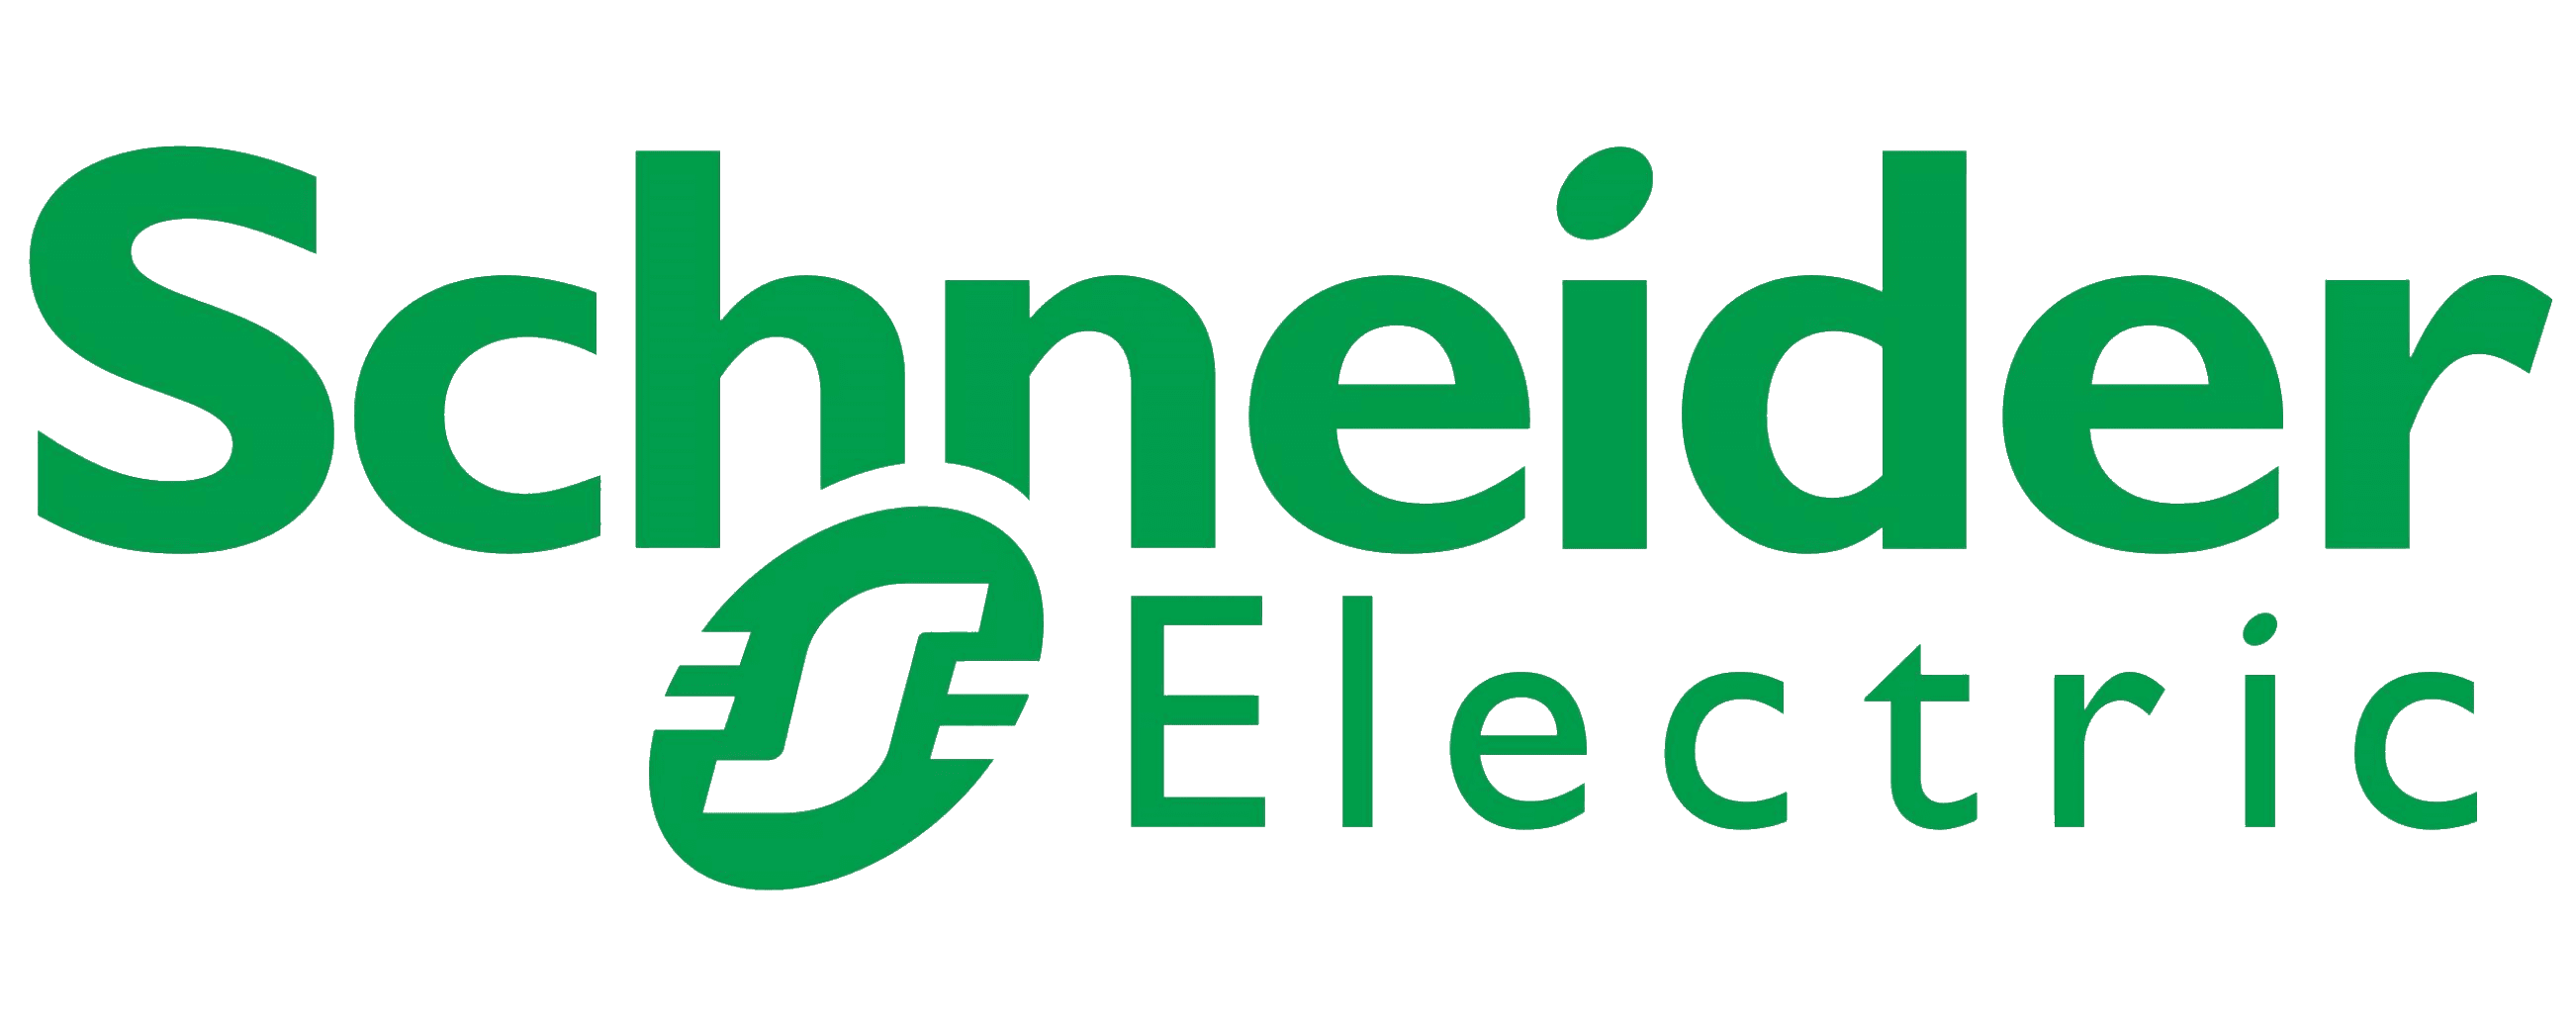 Schneider Electric partner logo